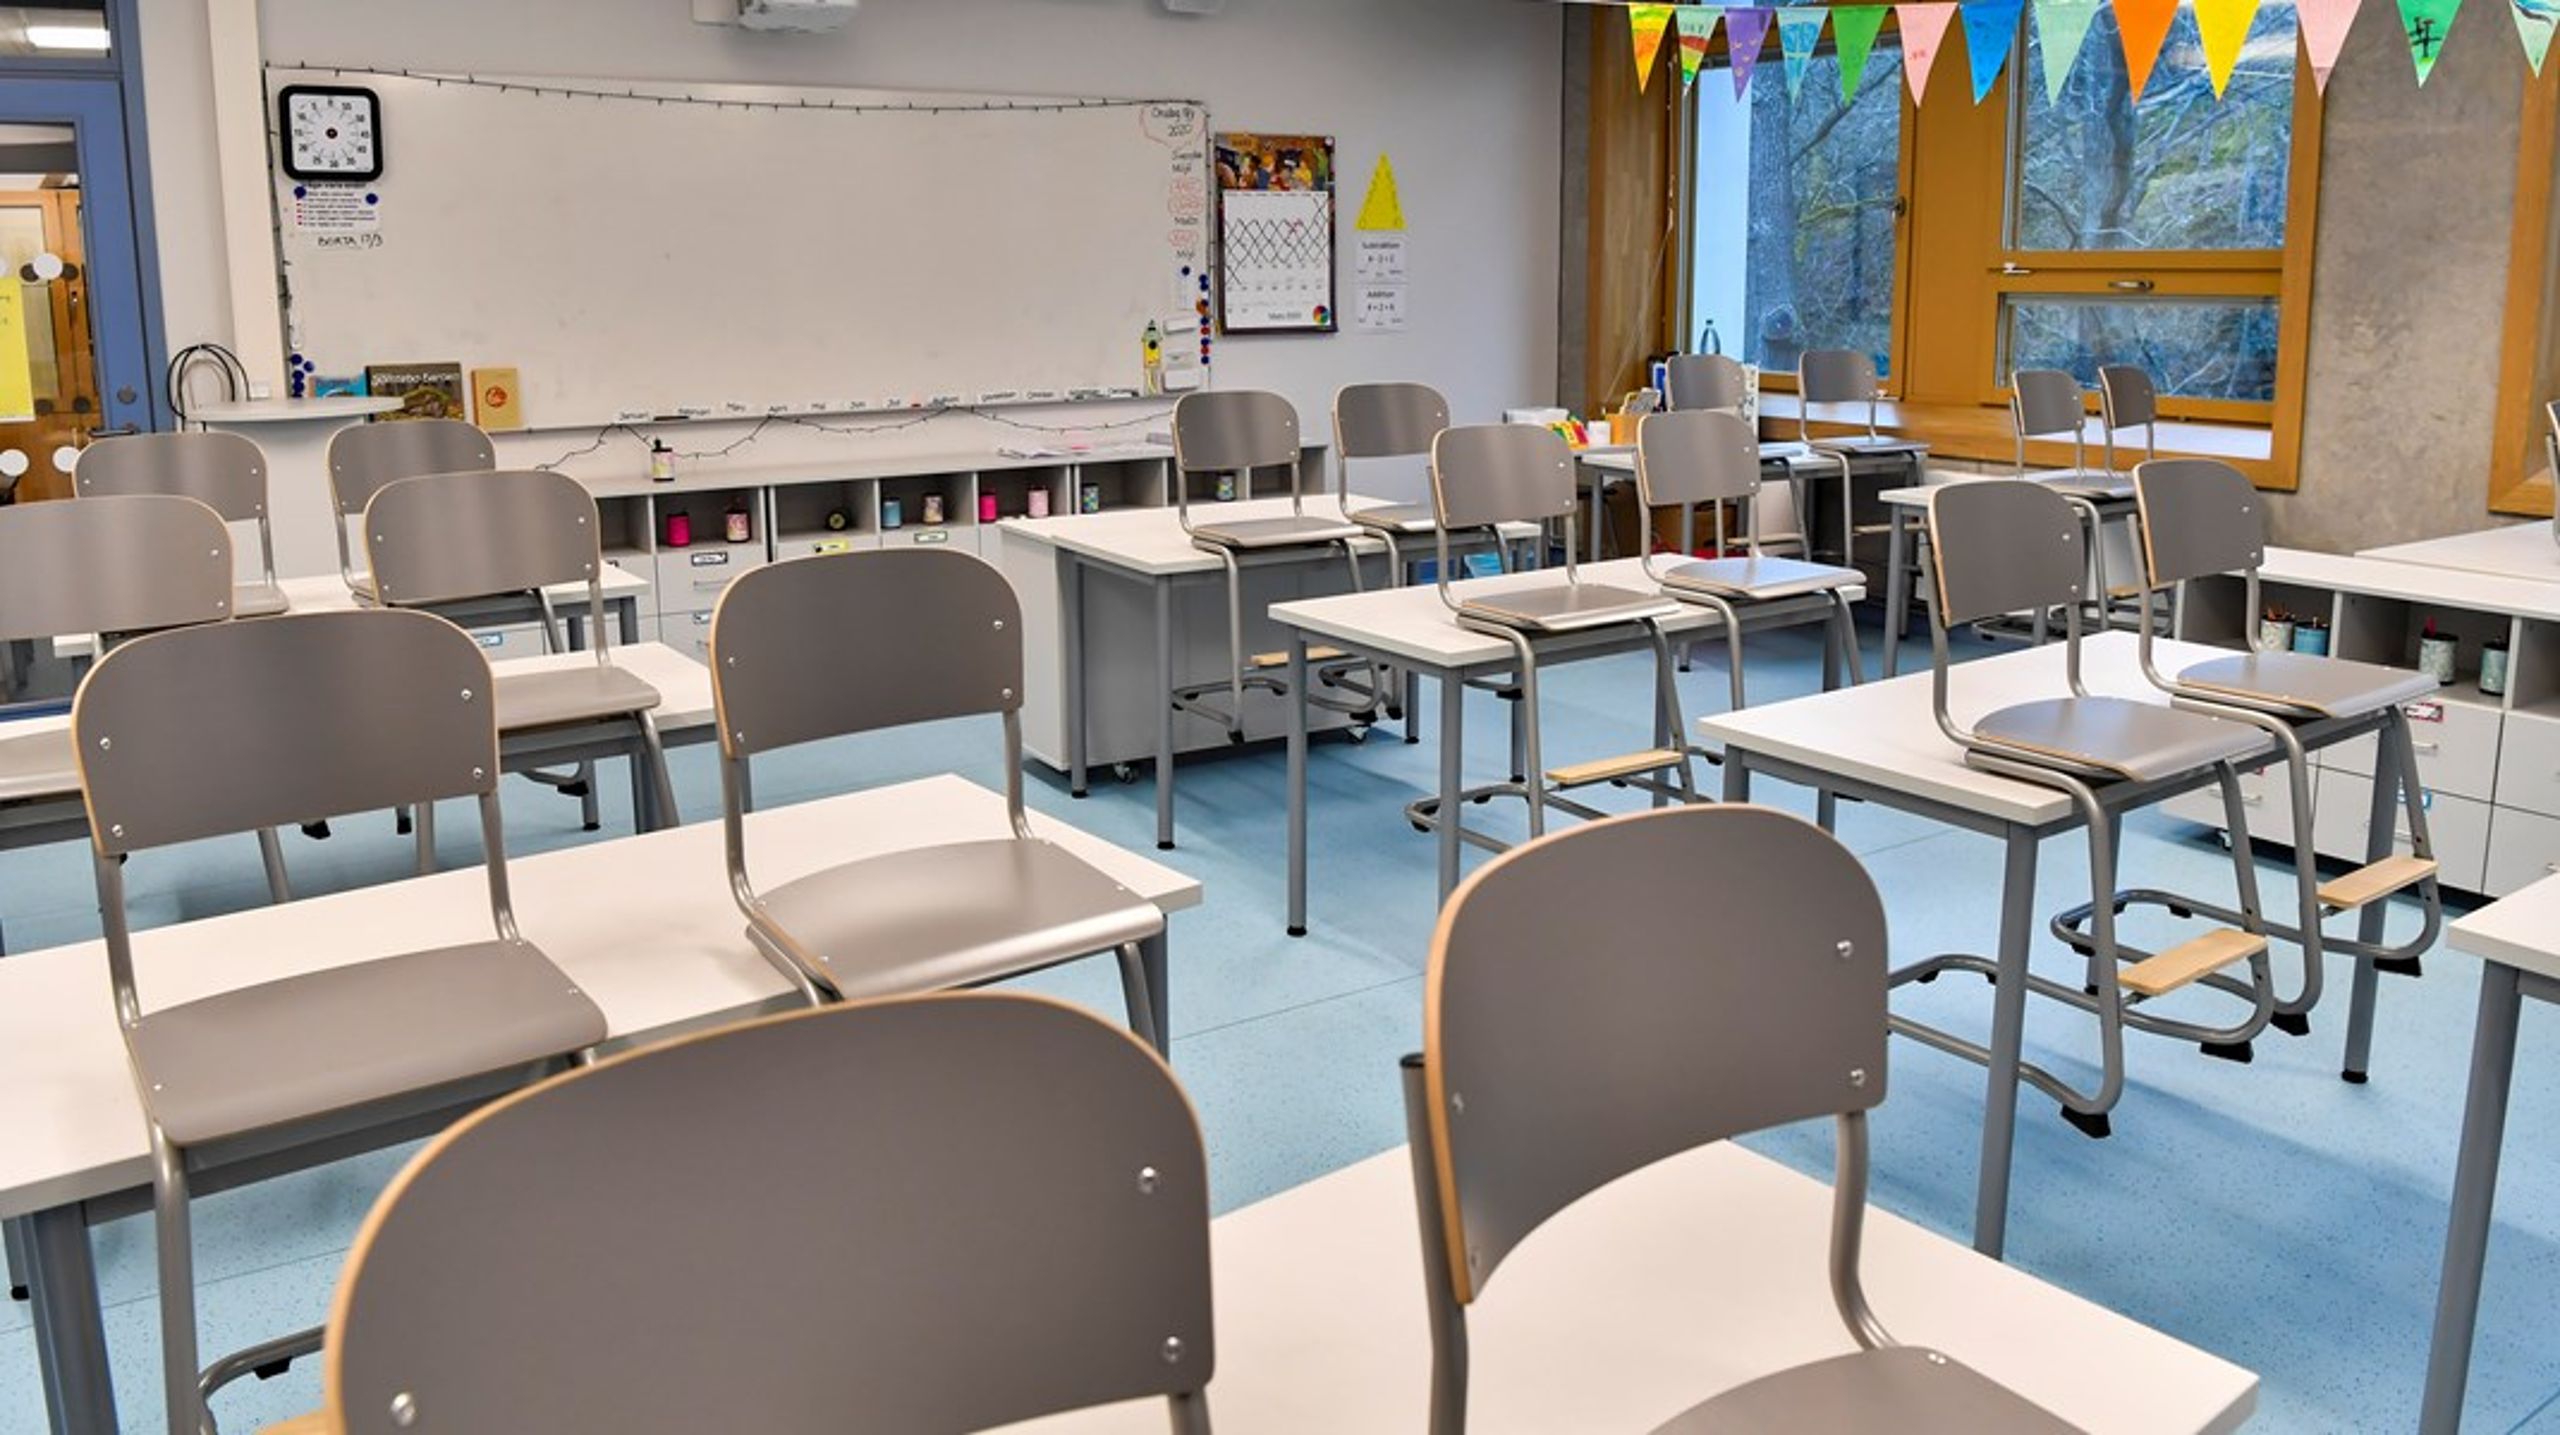 I forskning som Skolverket tagit fram bidrar den skenande skolsegregationen också till att undervisningskvaliteten och likvärdigheten minskar, skriver debattören.